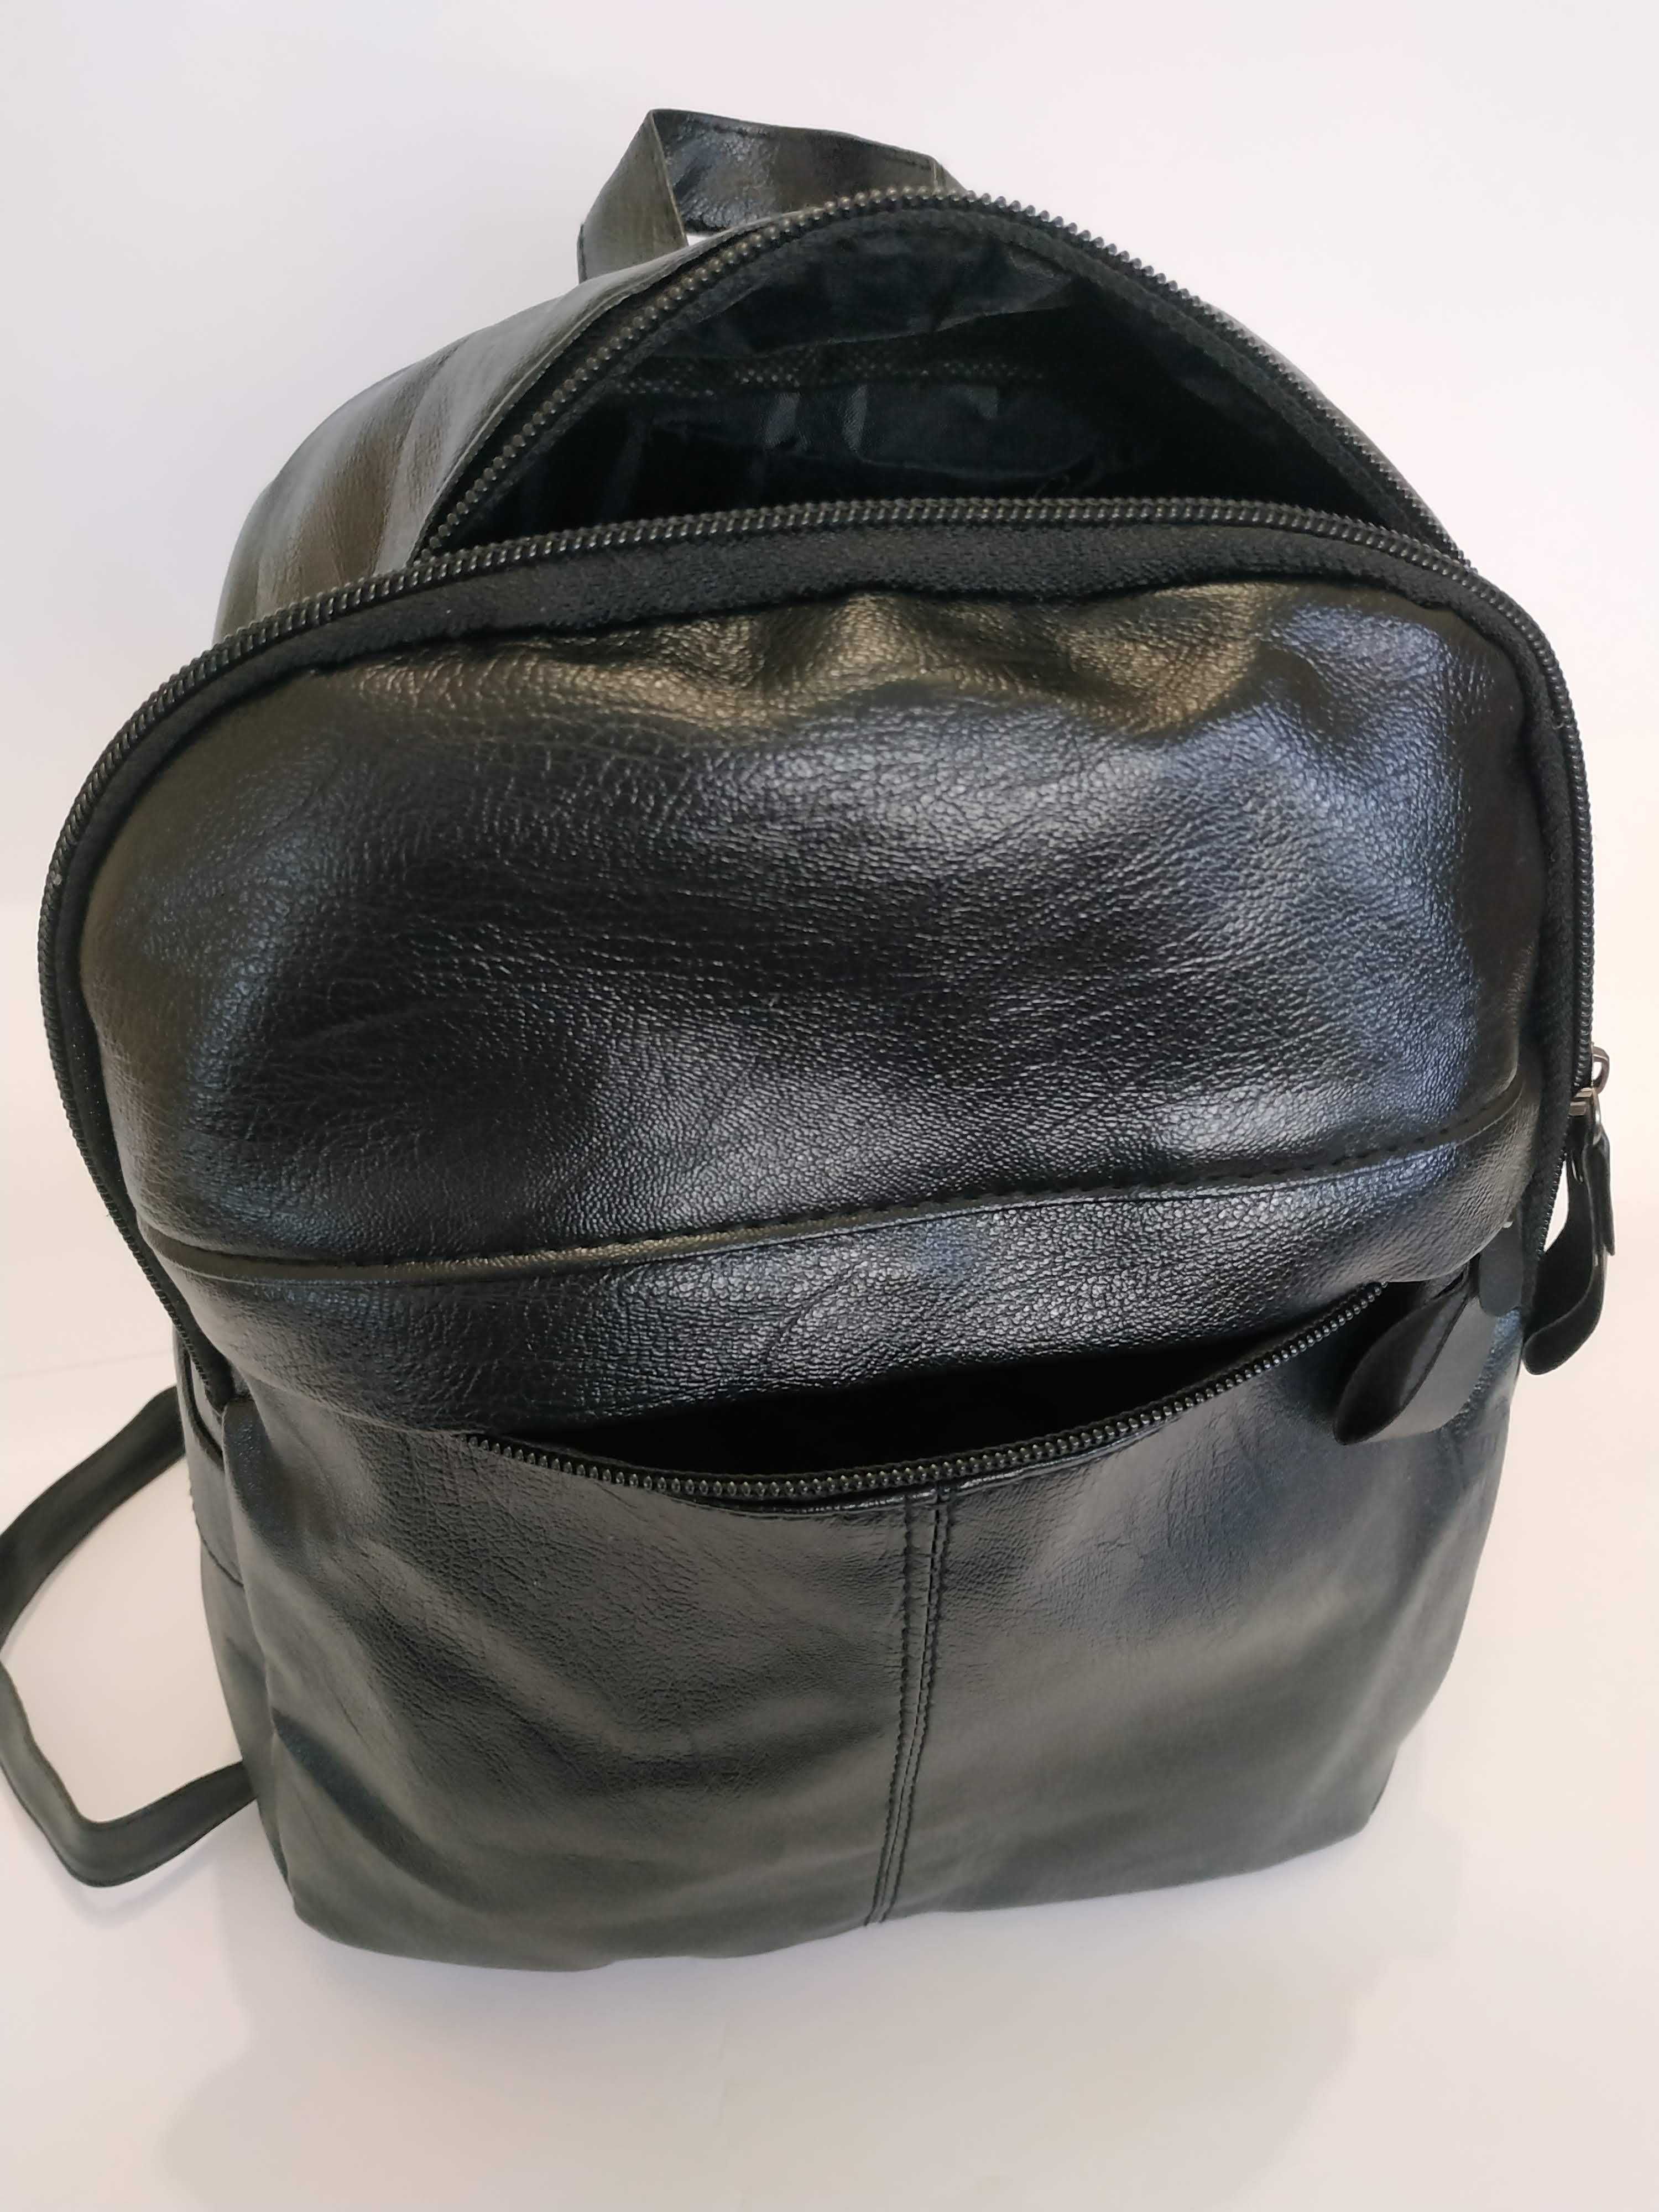 Hoвий жіночий рюкзак з еко-шкіри, колір чорний, жіноча сумка